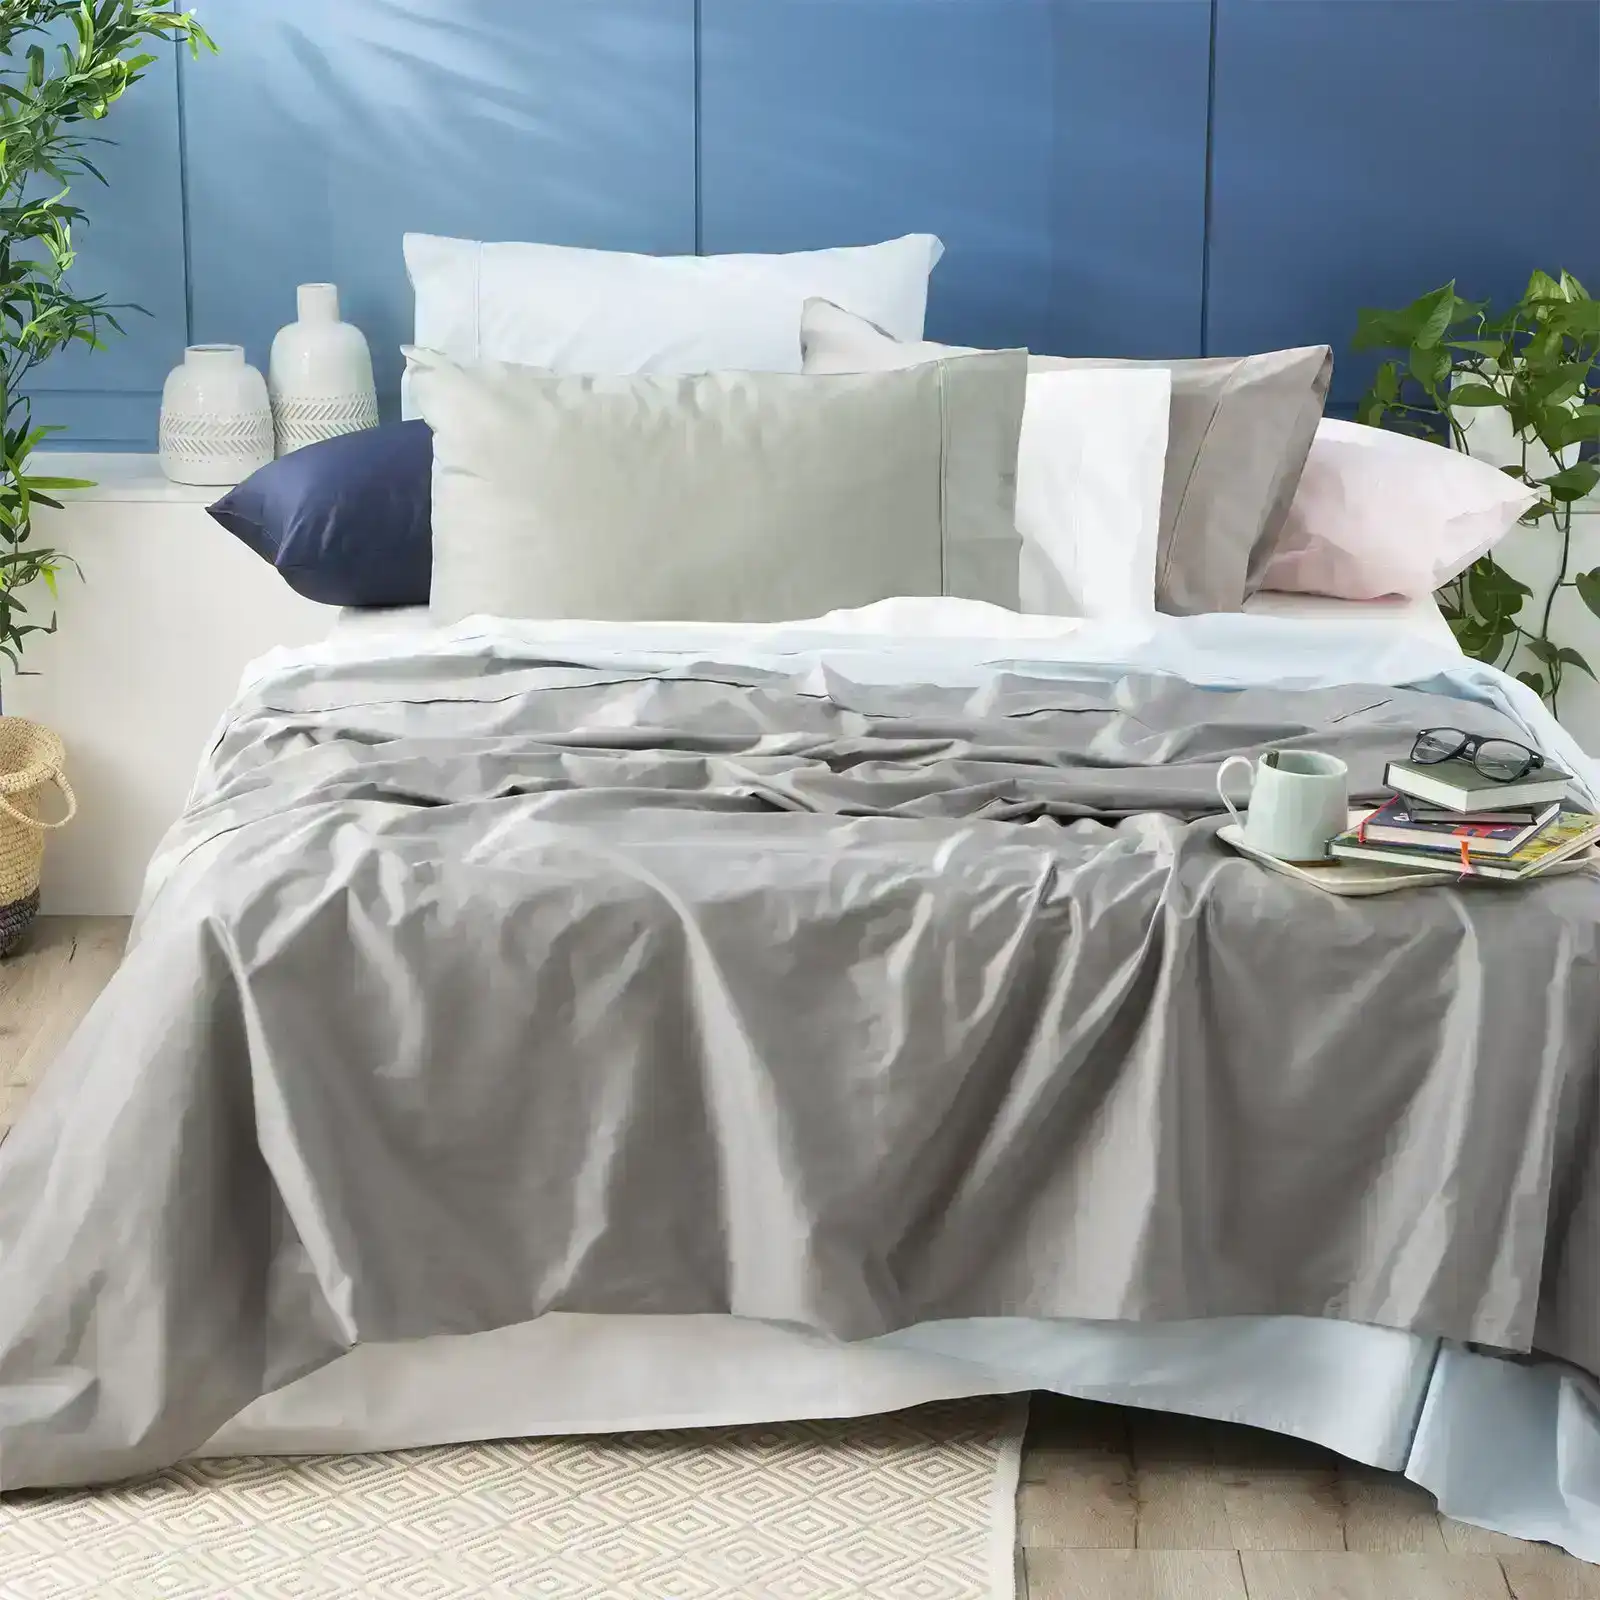 Park Avenue Double Single Bed Sheet/Pillowcase 500TC Bamboo Cotton Bedding Peach